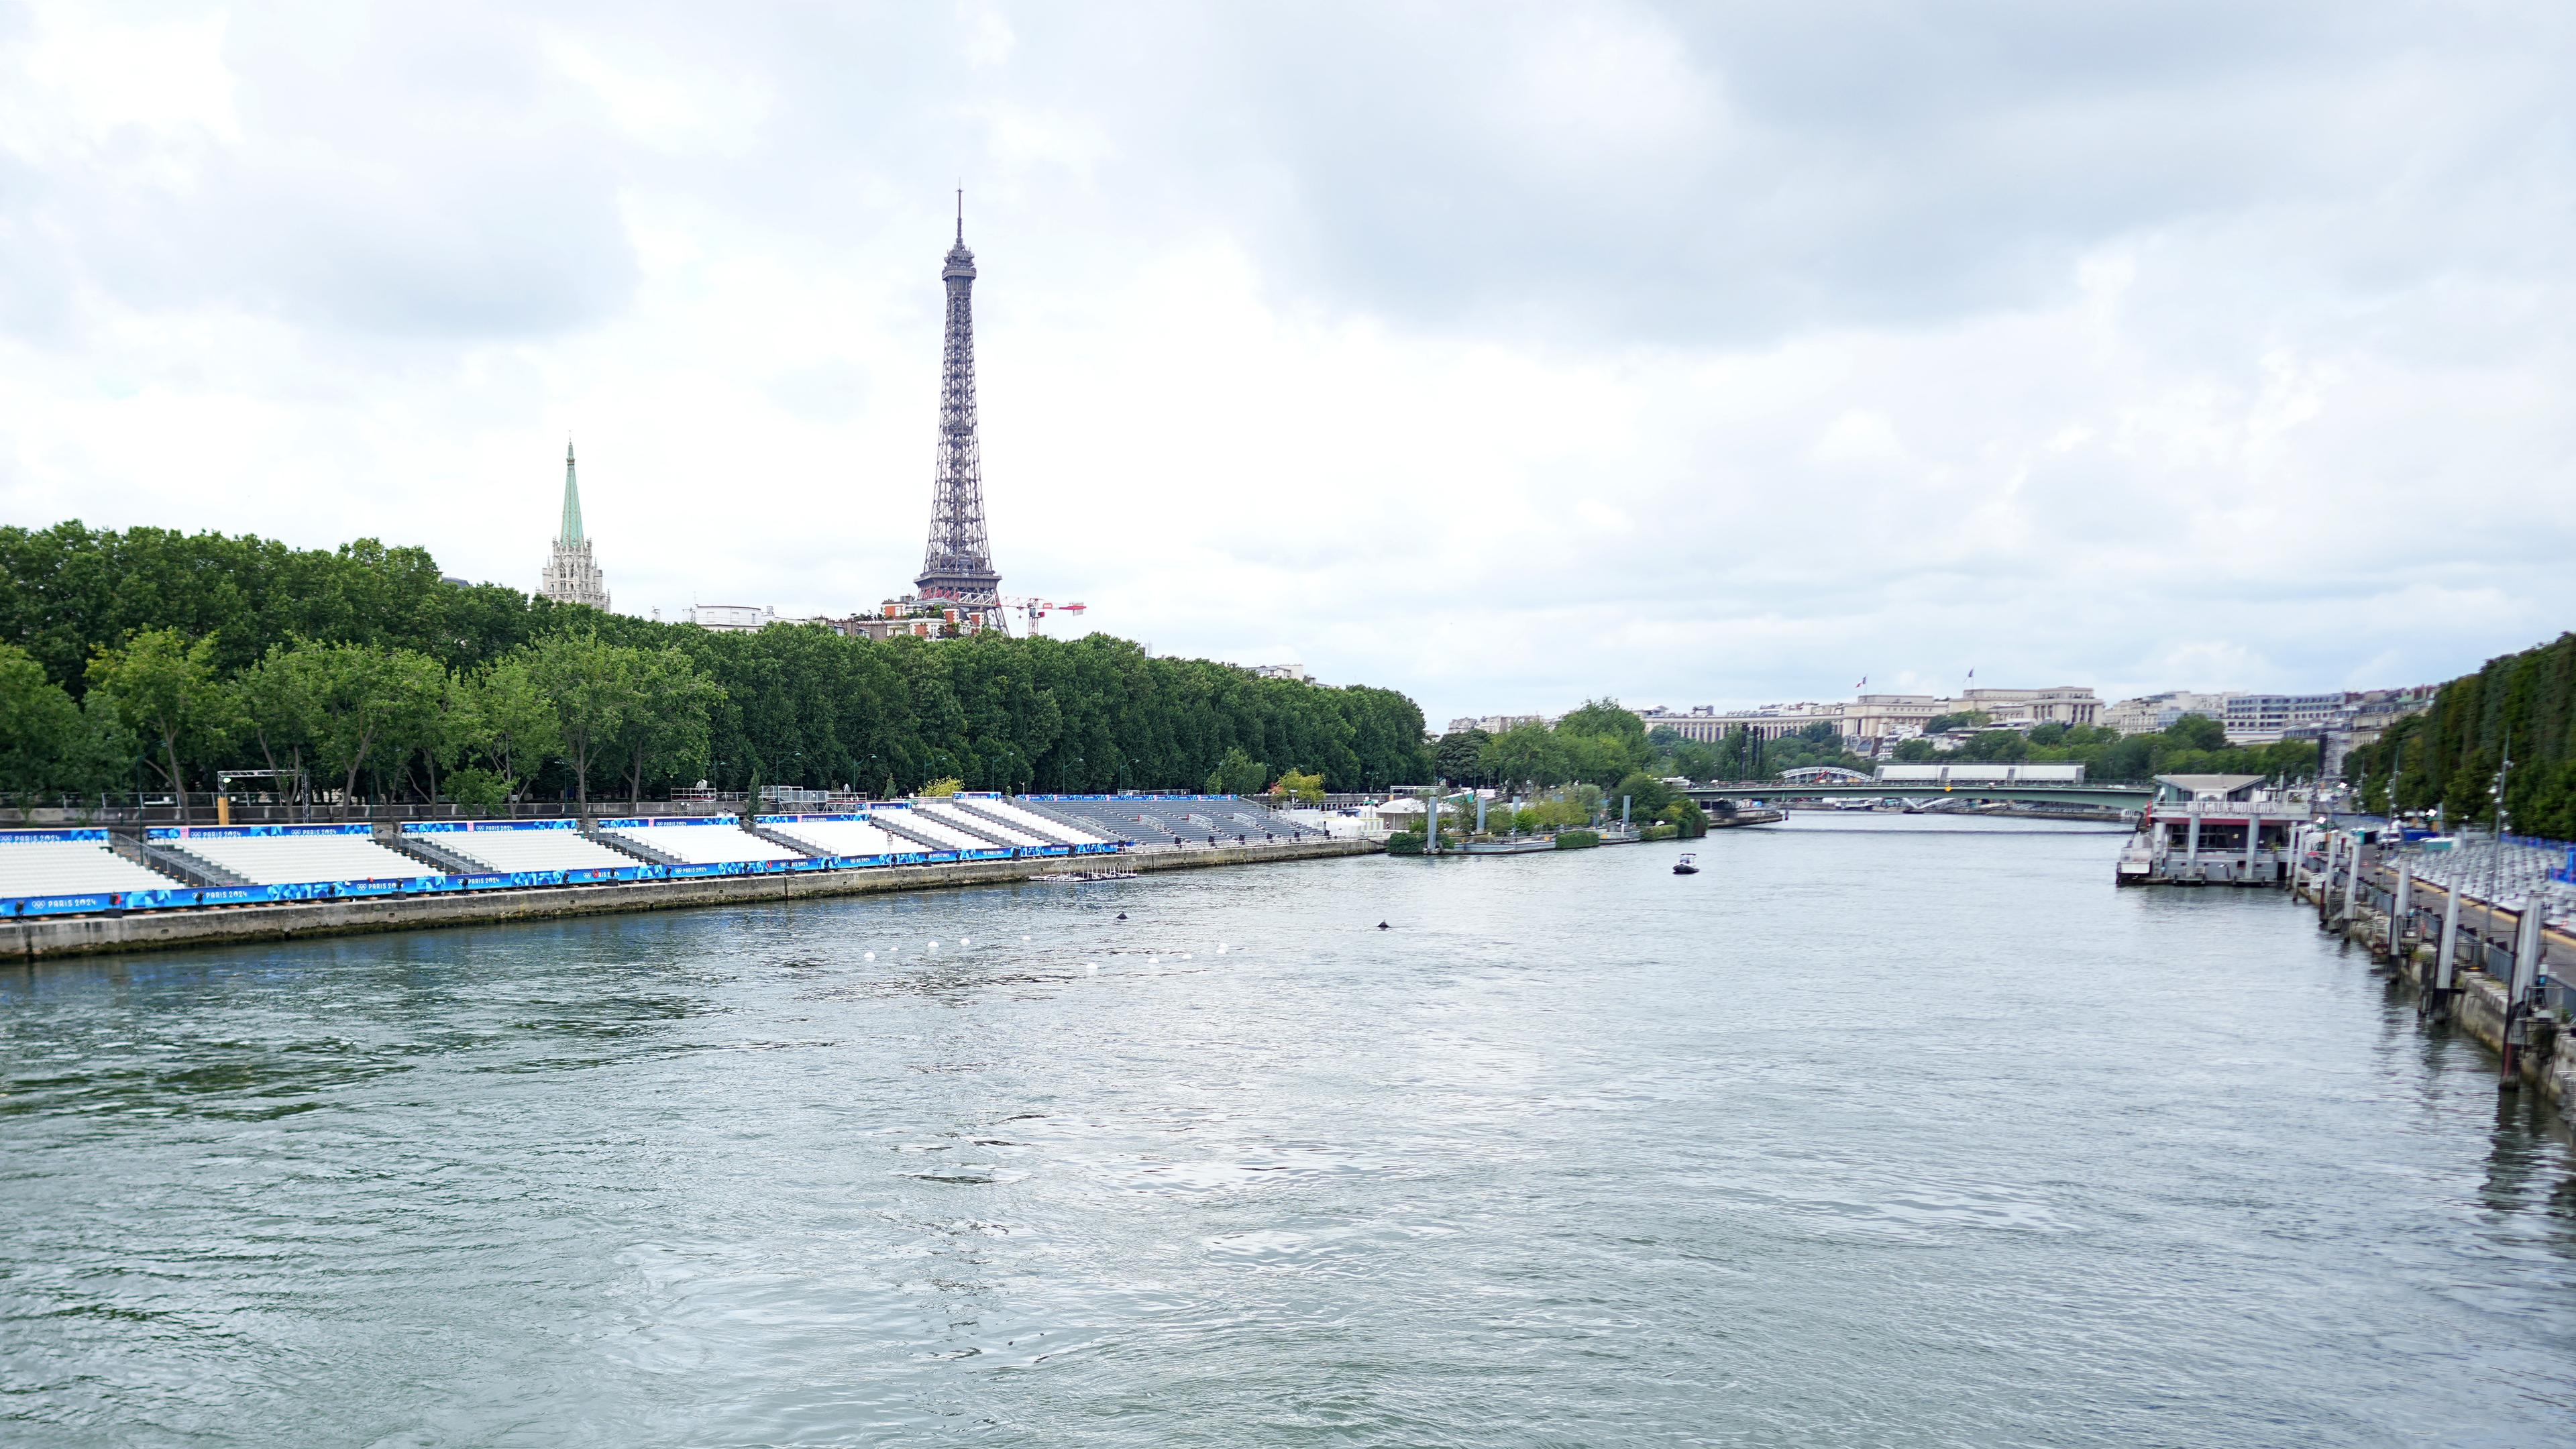 Olympia Paris 2024, Blick auf die Tribünen an der Seine. Hier sollen die Freiwasserwettbewerbe stattfinden. Im Hintergrund ist der Eiffelturm zu sehen.